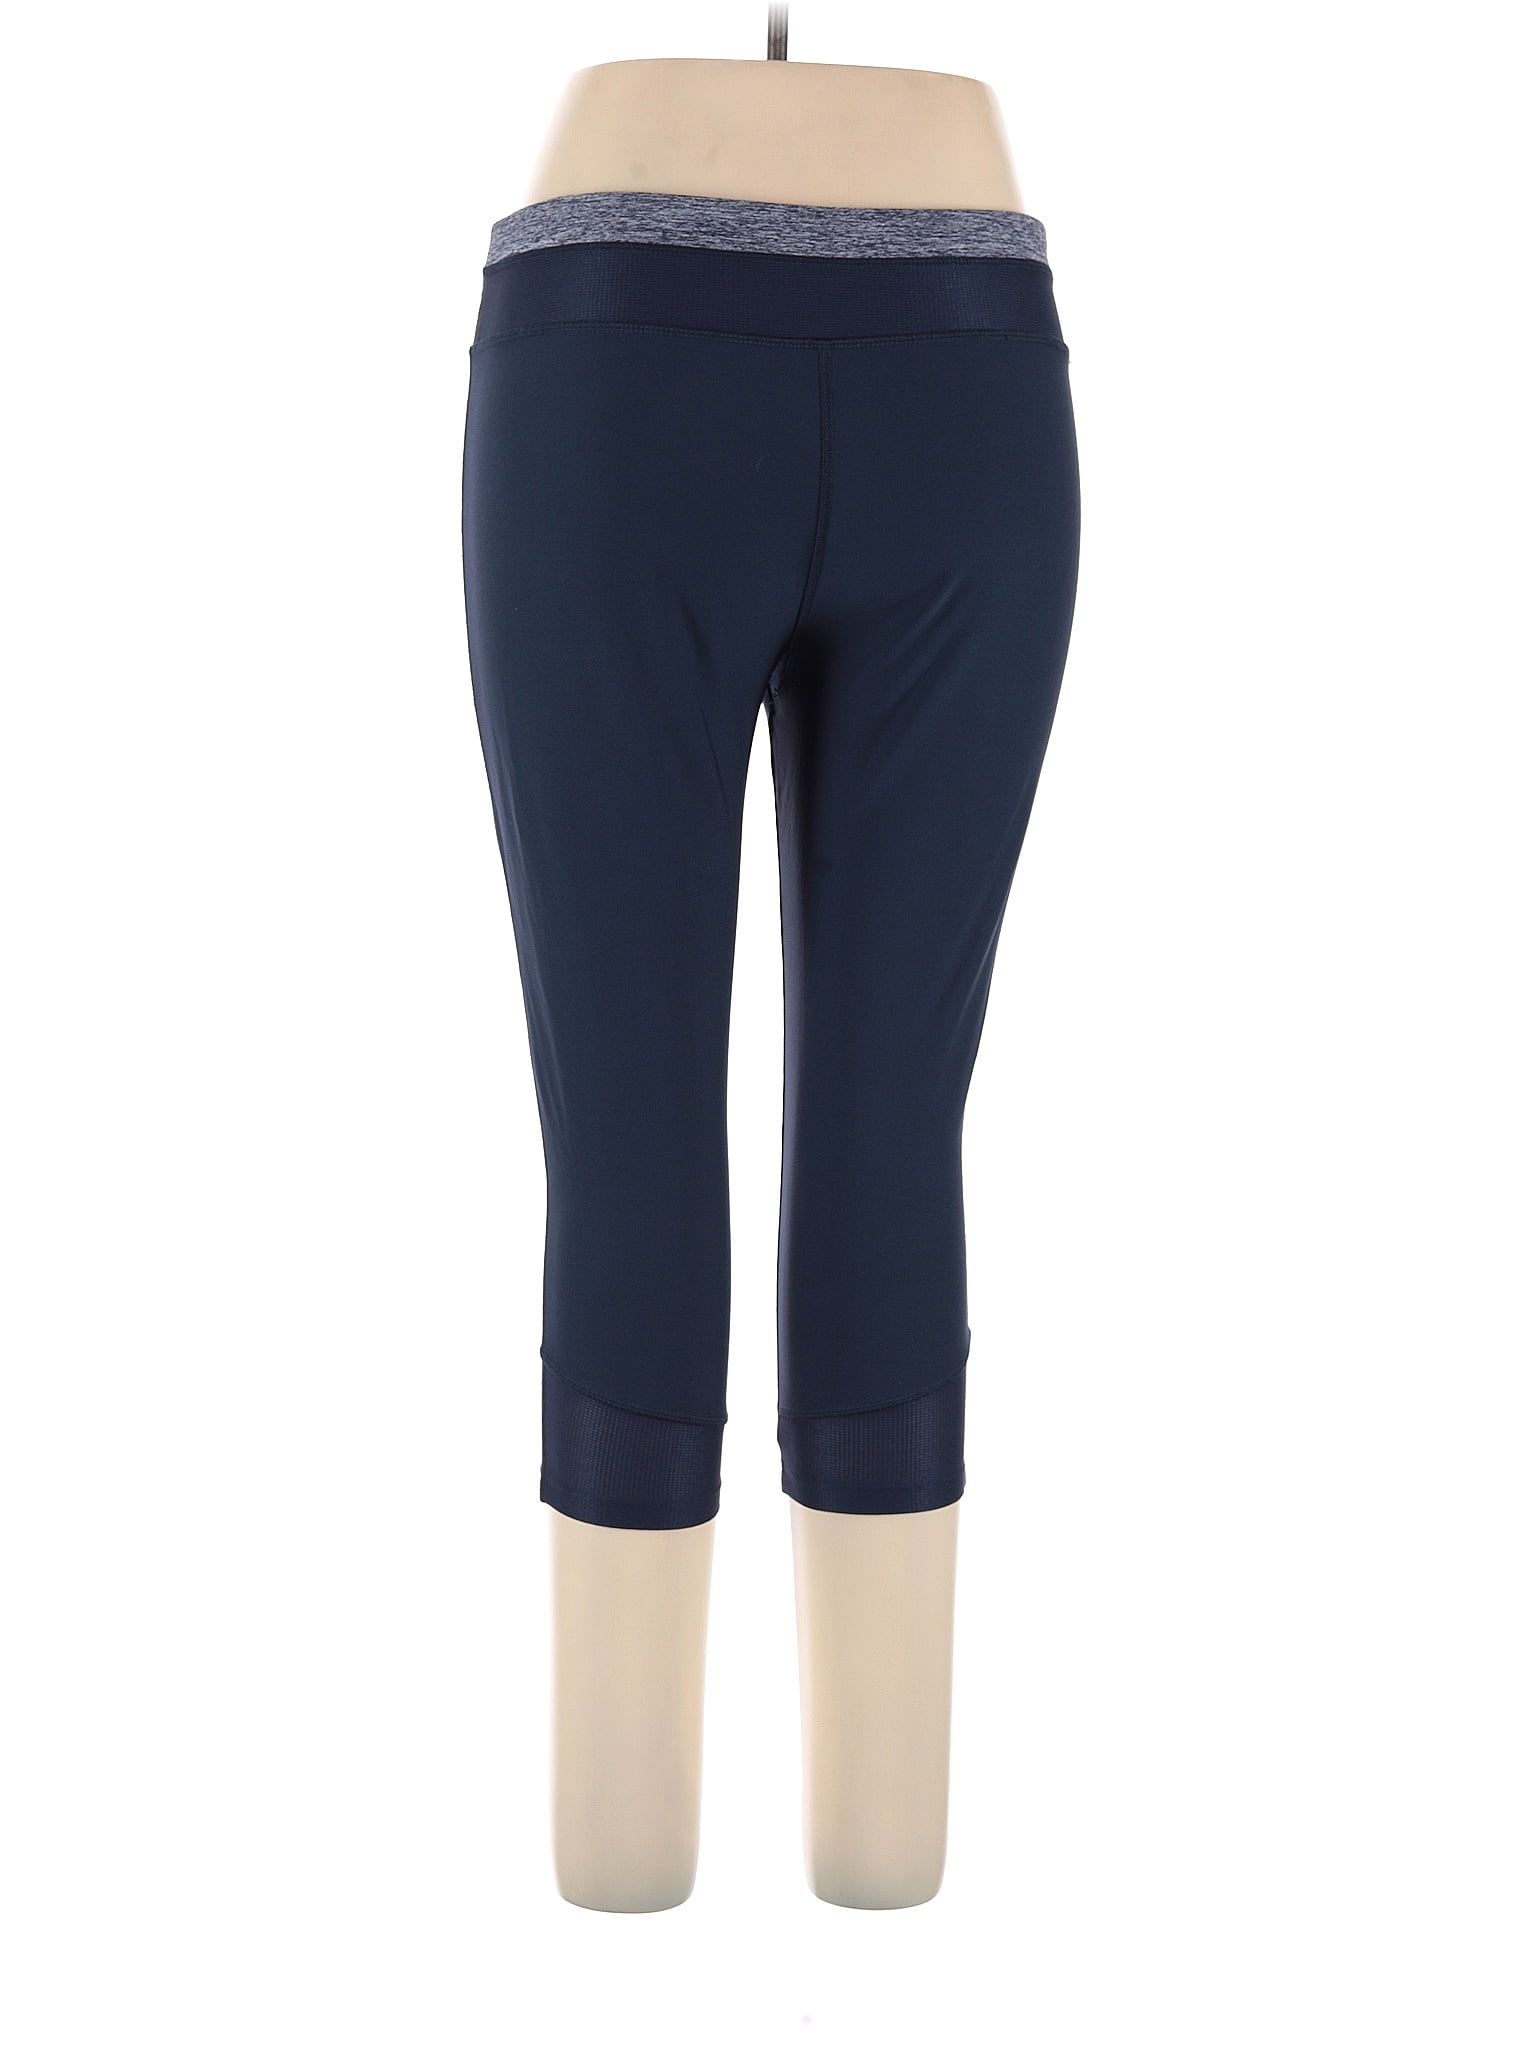 VOGO Athletica Blue Active Pants Size XL - 60% off